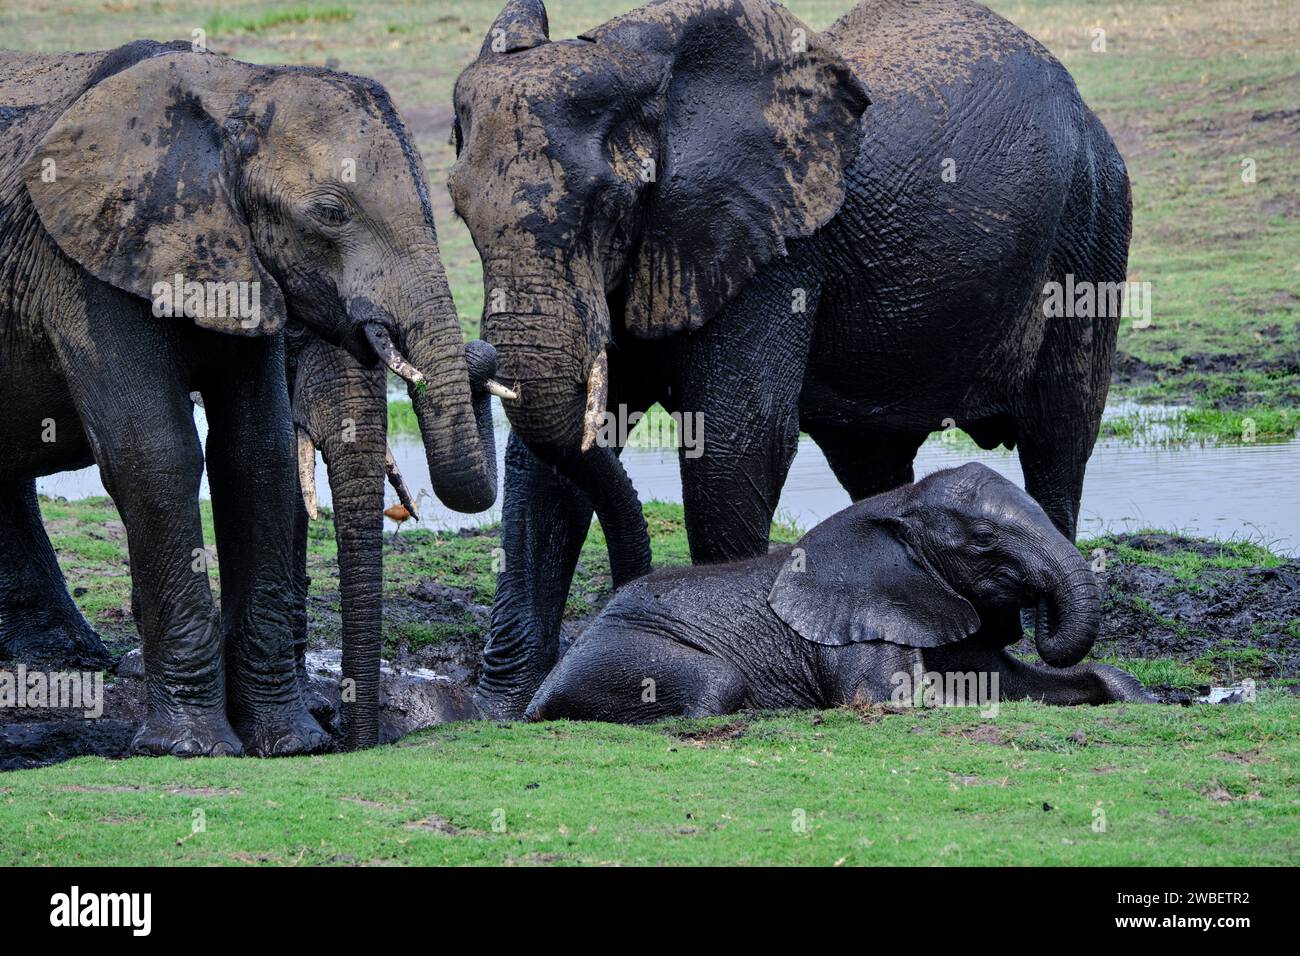 Botswana, District du Nord-Ouest, Parc national de Chobe, éléphants sauvages d'Afrique (Loxodonta africana) Banque D'Images